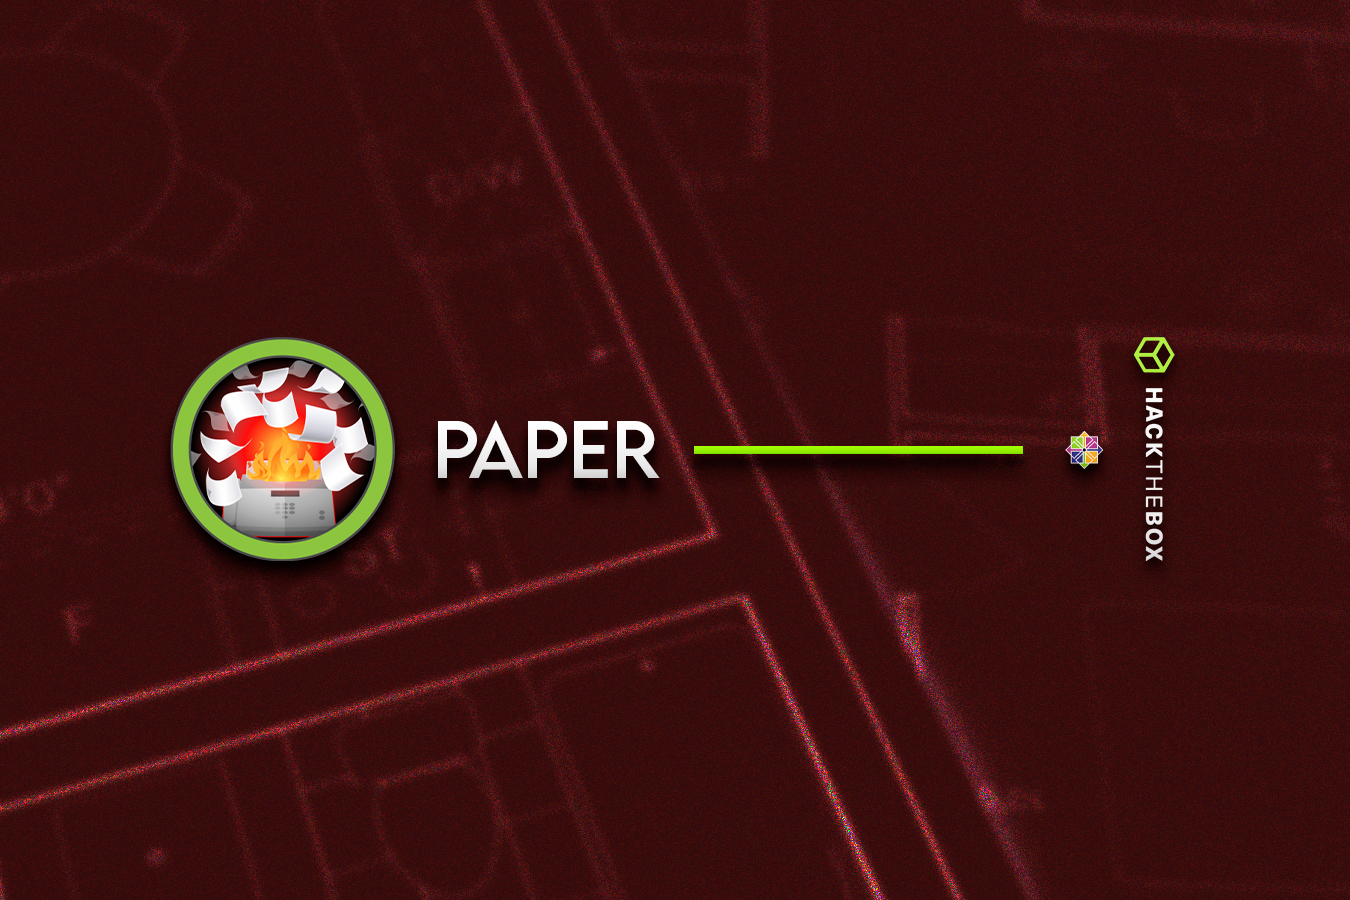 HackTheBox - Paper